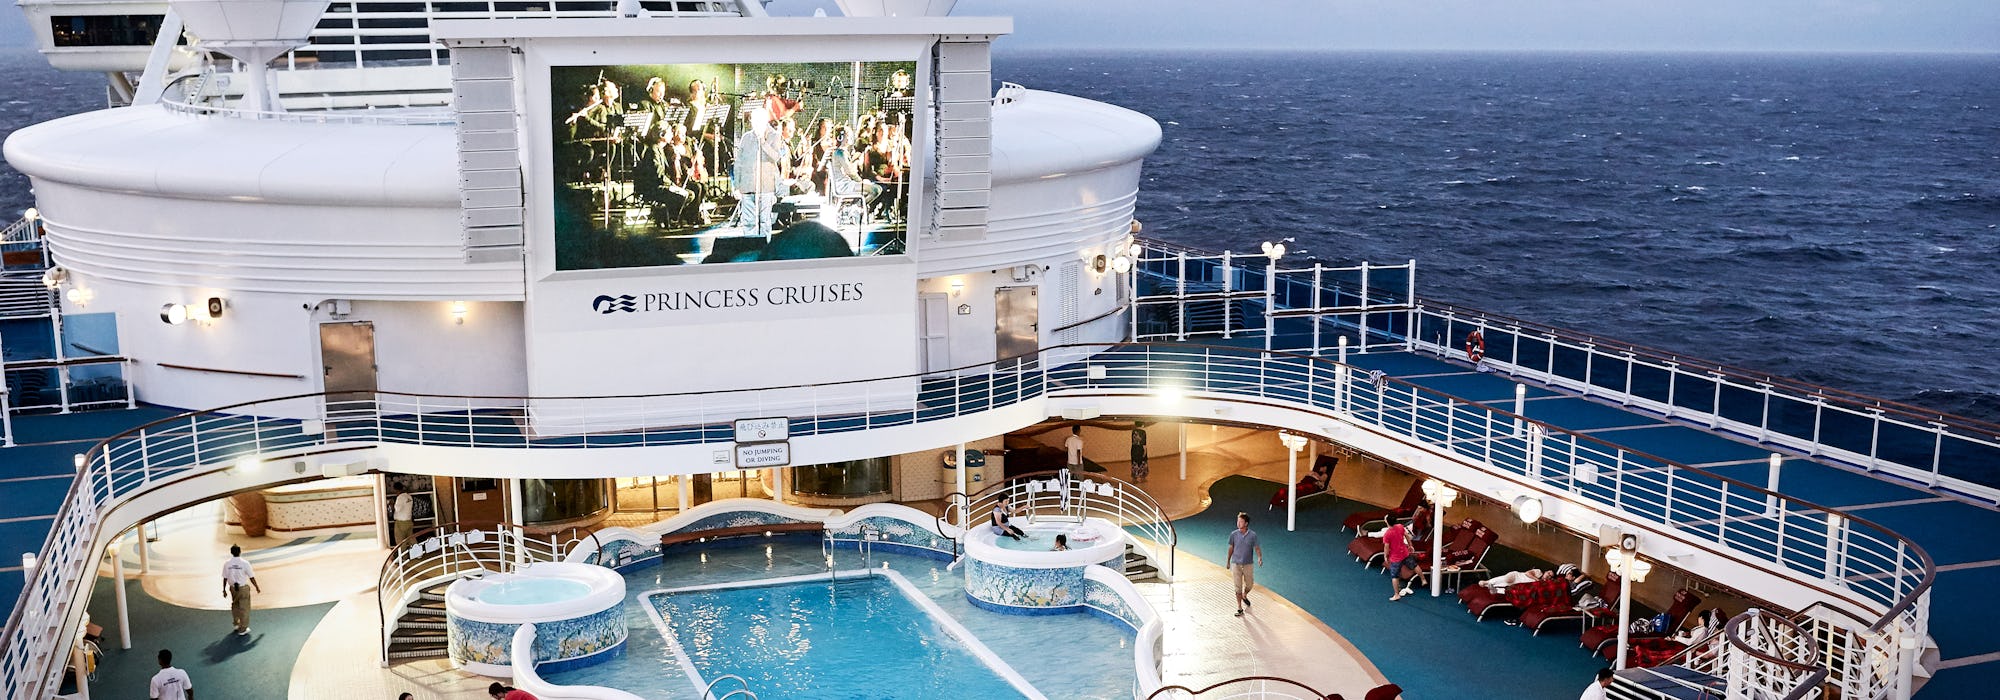 Bild uppifrån på fartyget Diamond Princess poolområde, i överkant syns också fartygets stora bio-skärm.